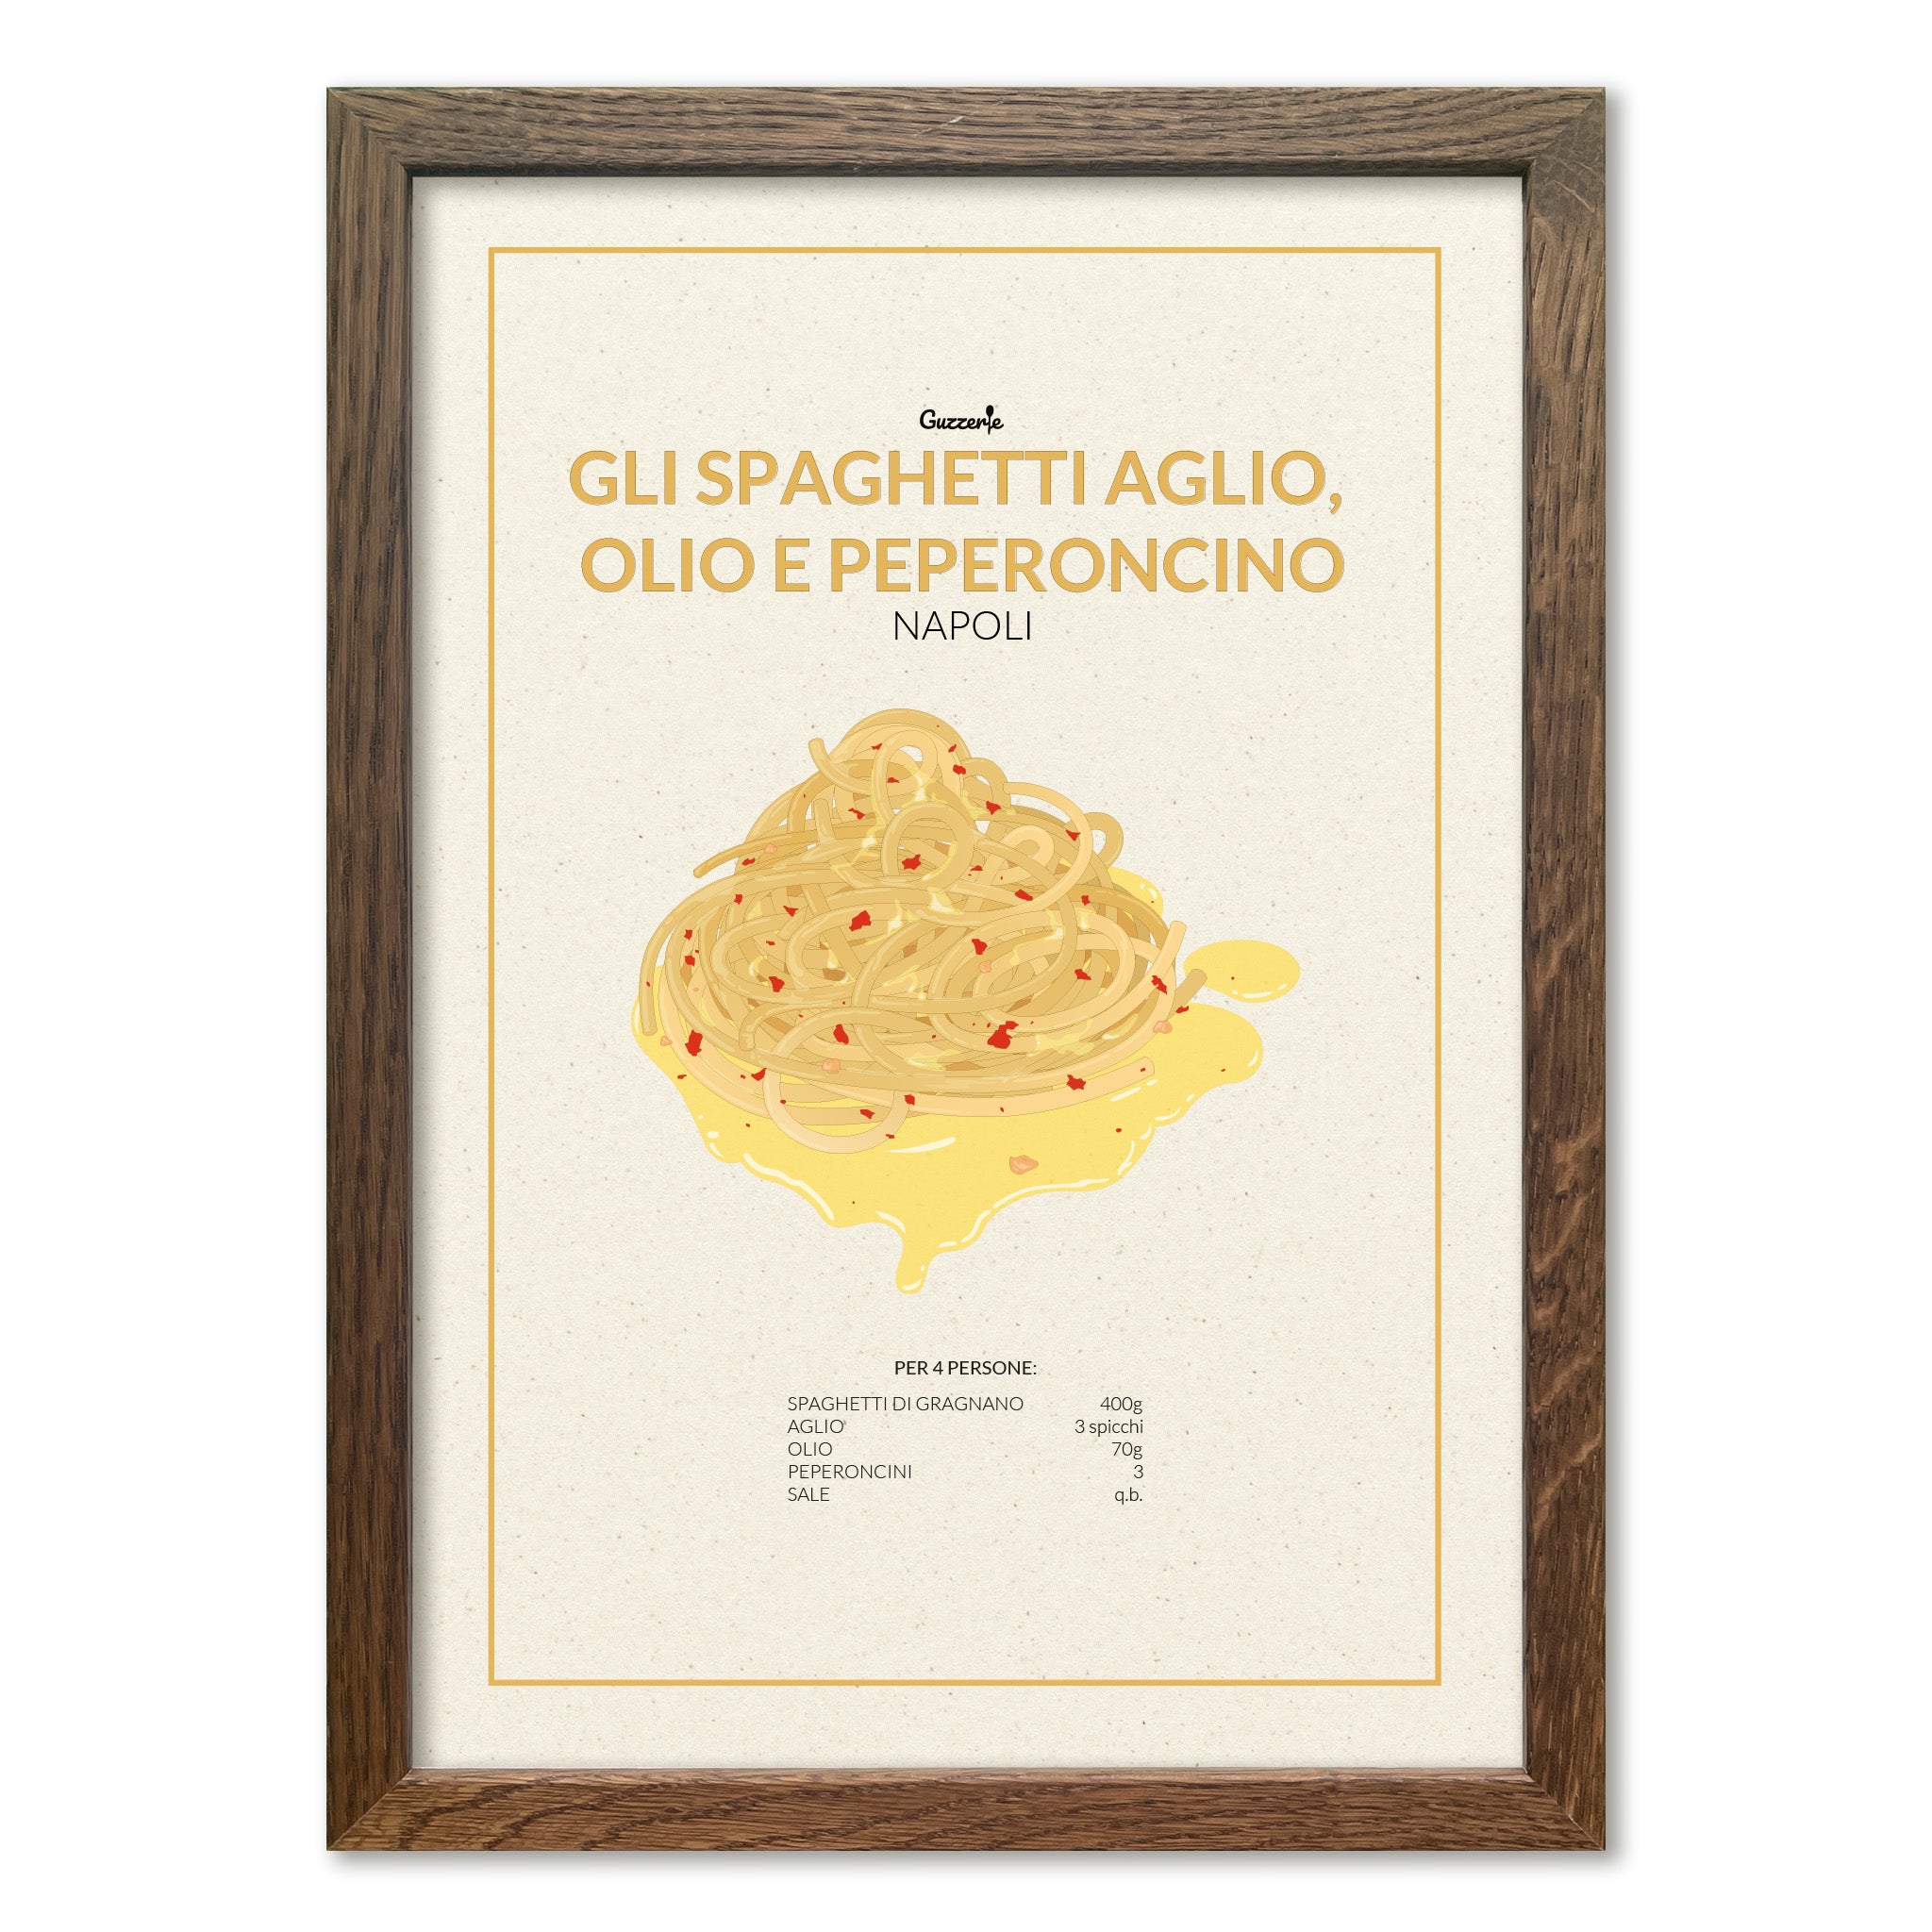 Iconic Poster of Spaghetti Aglio, Olio e Peperoncino | Guzzerie